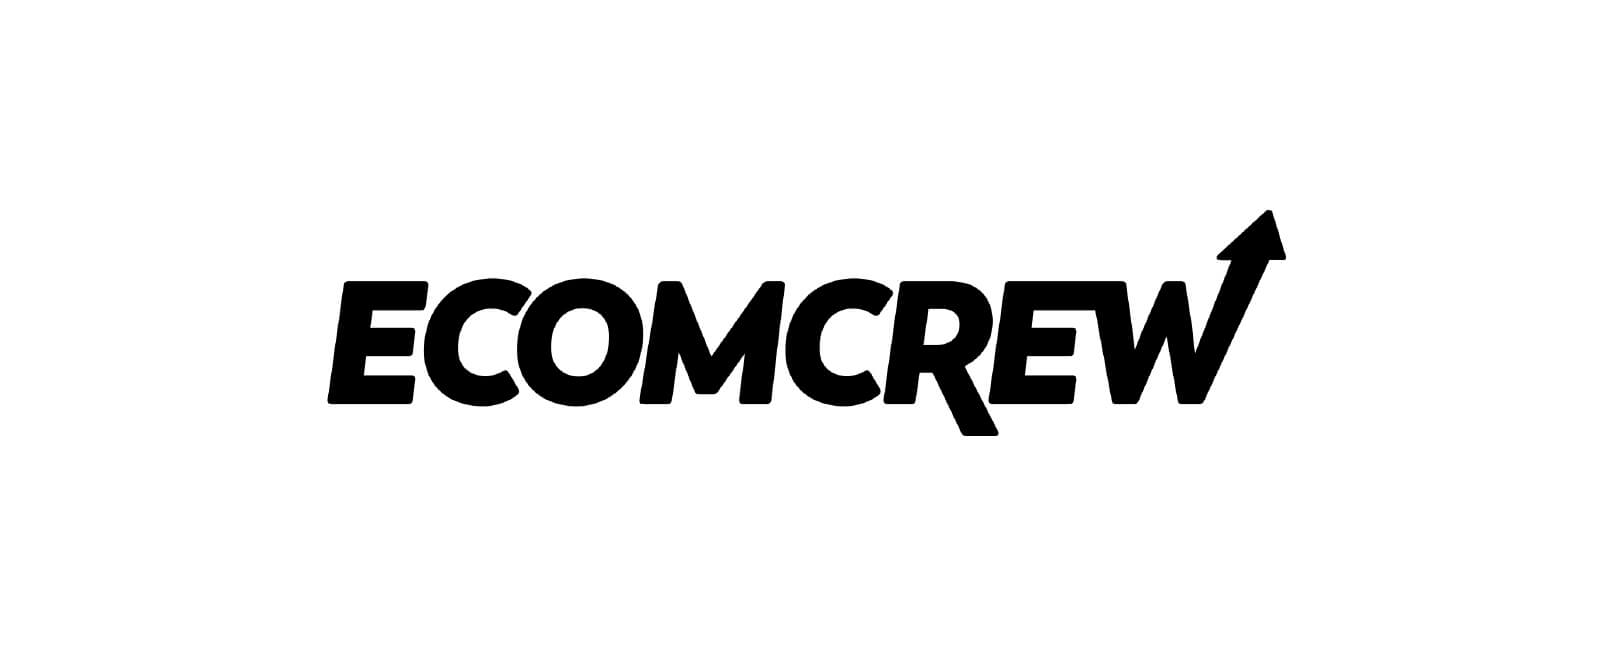 EcommCrew